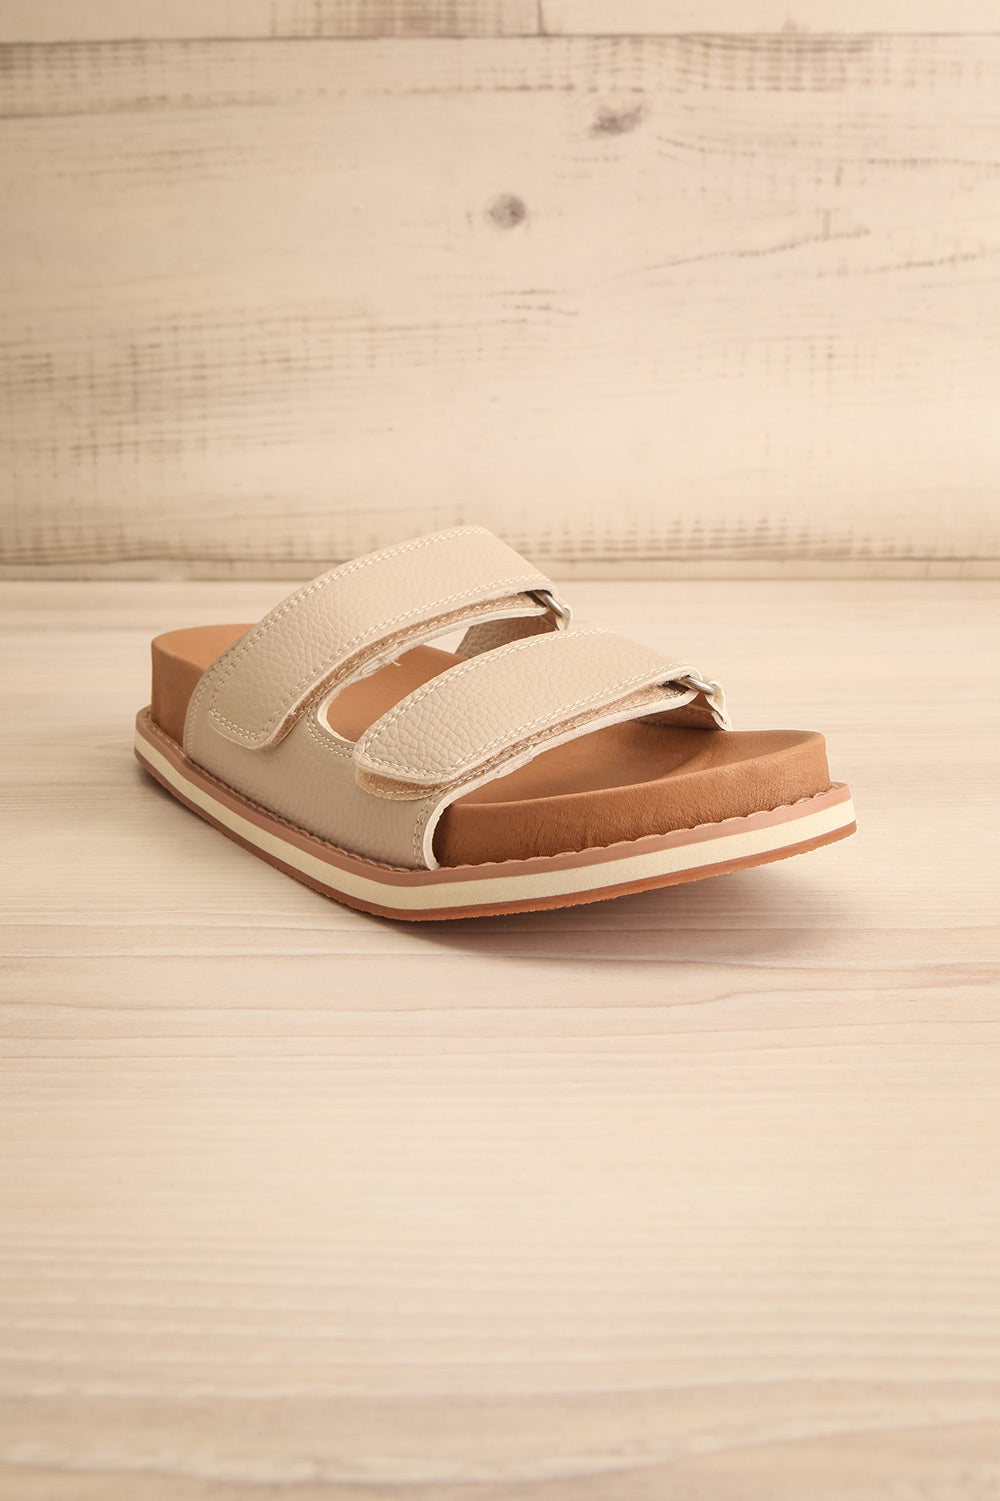 Siemna Grey Slide Sandals w/ Velcro Straps | La petite garçonne front view